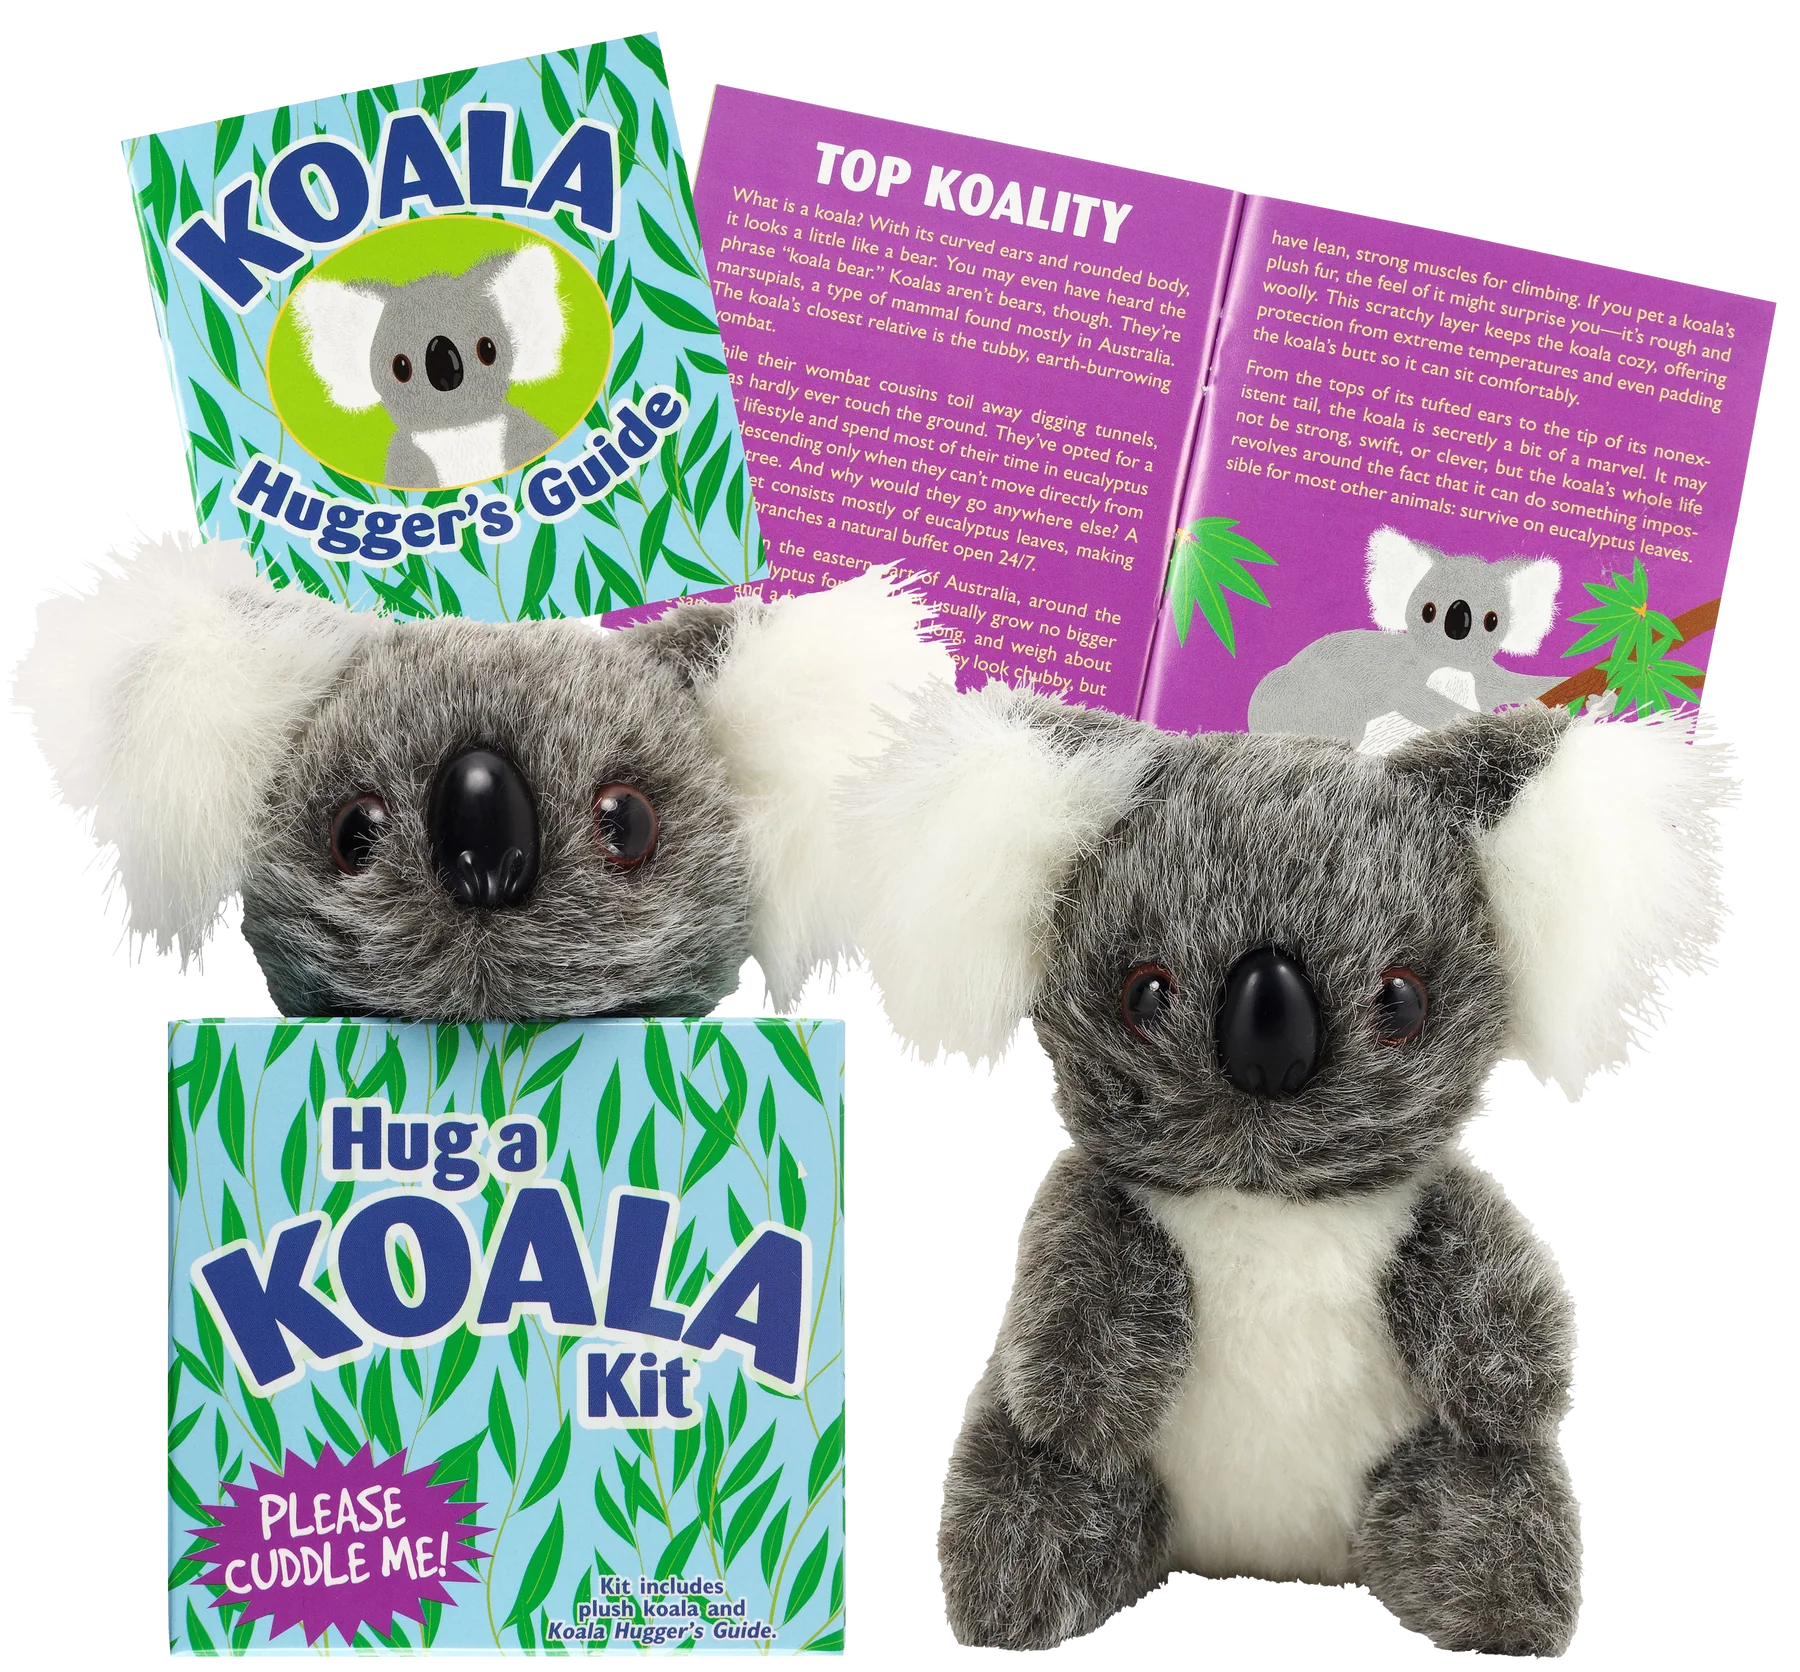 Hug a Koala Kit